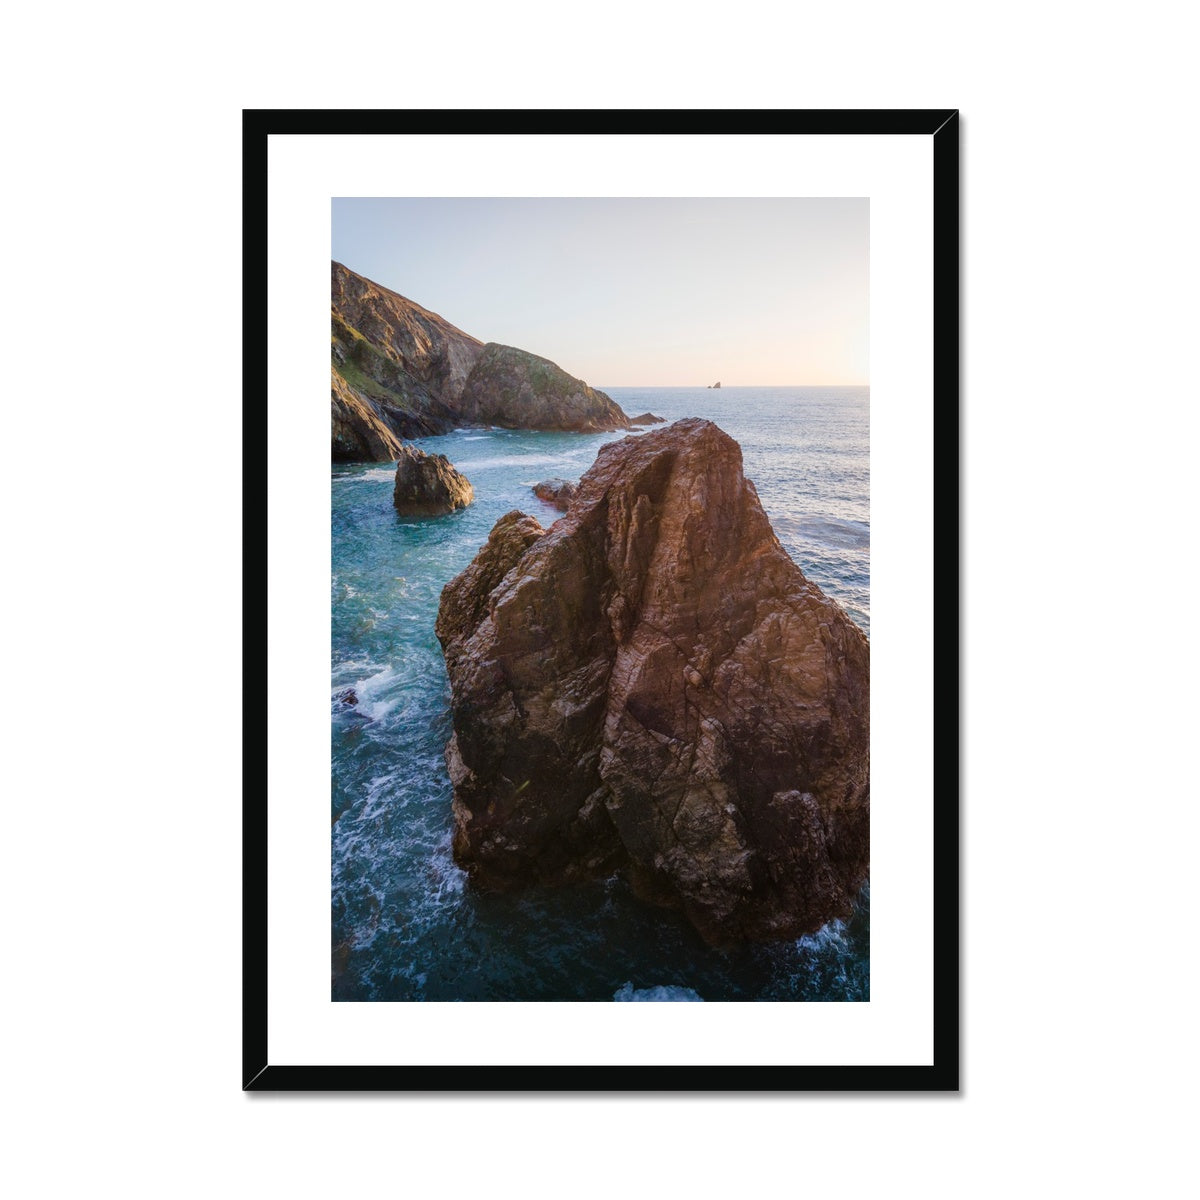 hanover rocks portrait framed print